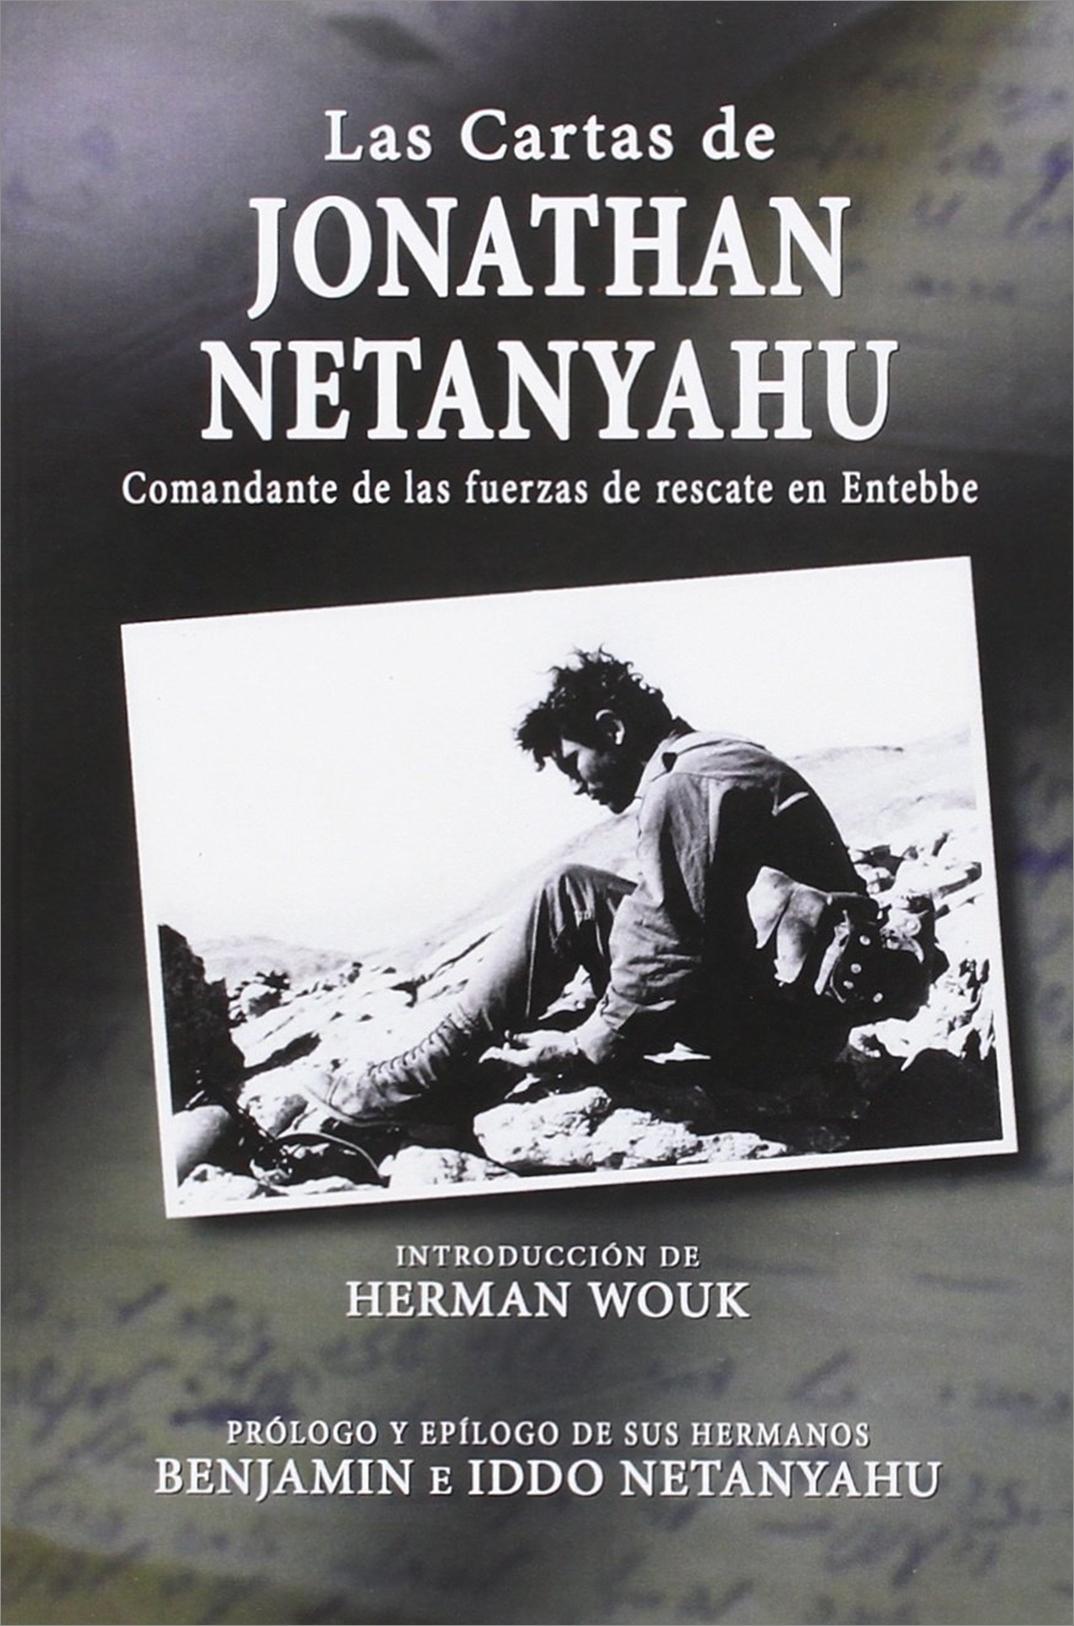 Las cartas de Jonathan Netanyahu  "Comandante de las fuerzas de rescate en Entebbe". 